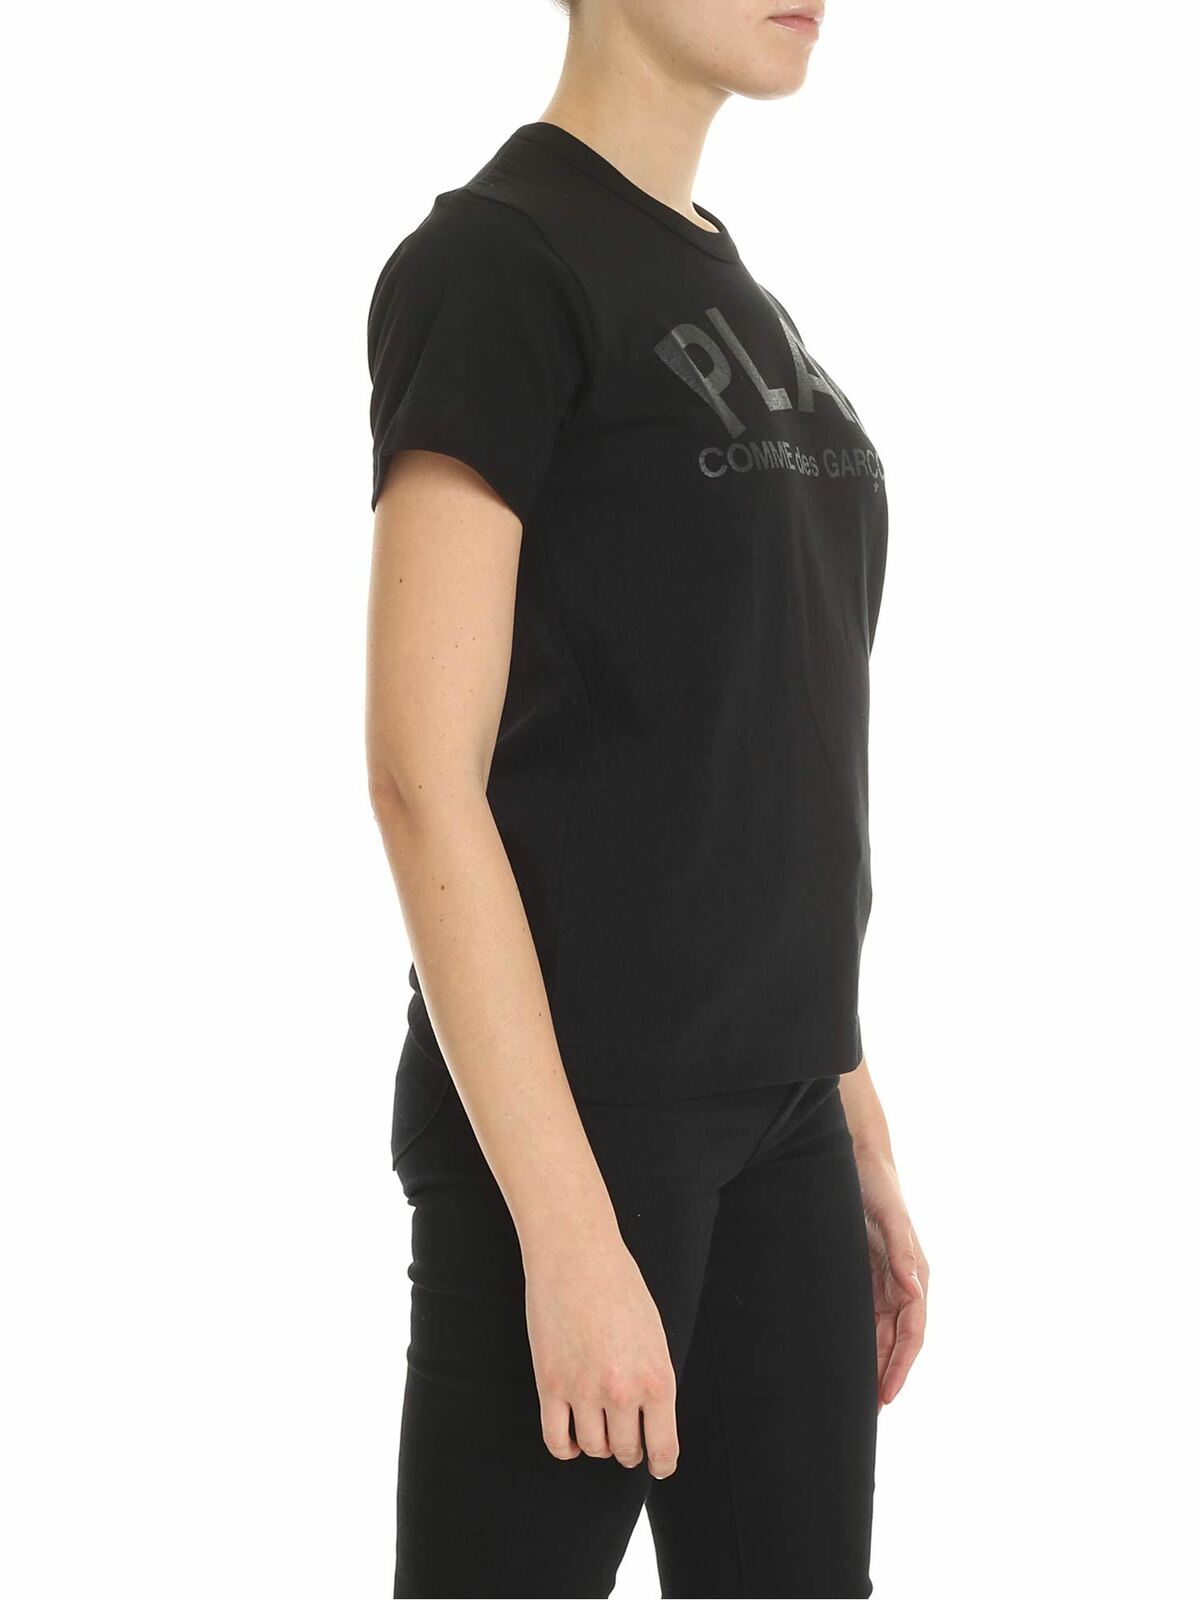 Shop Comme Des Garçons Play Black T-shirt With Comme Des Garcons Print